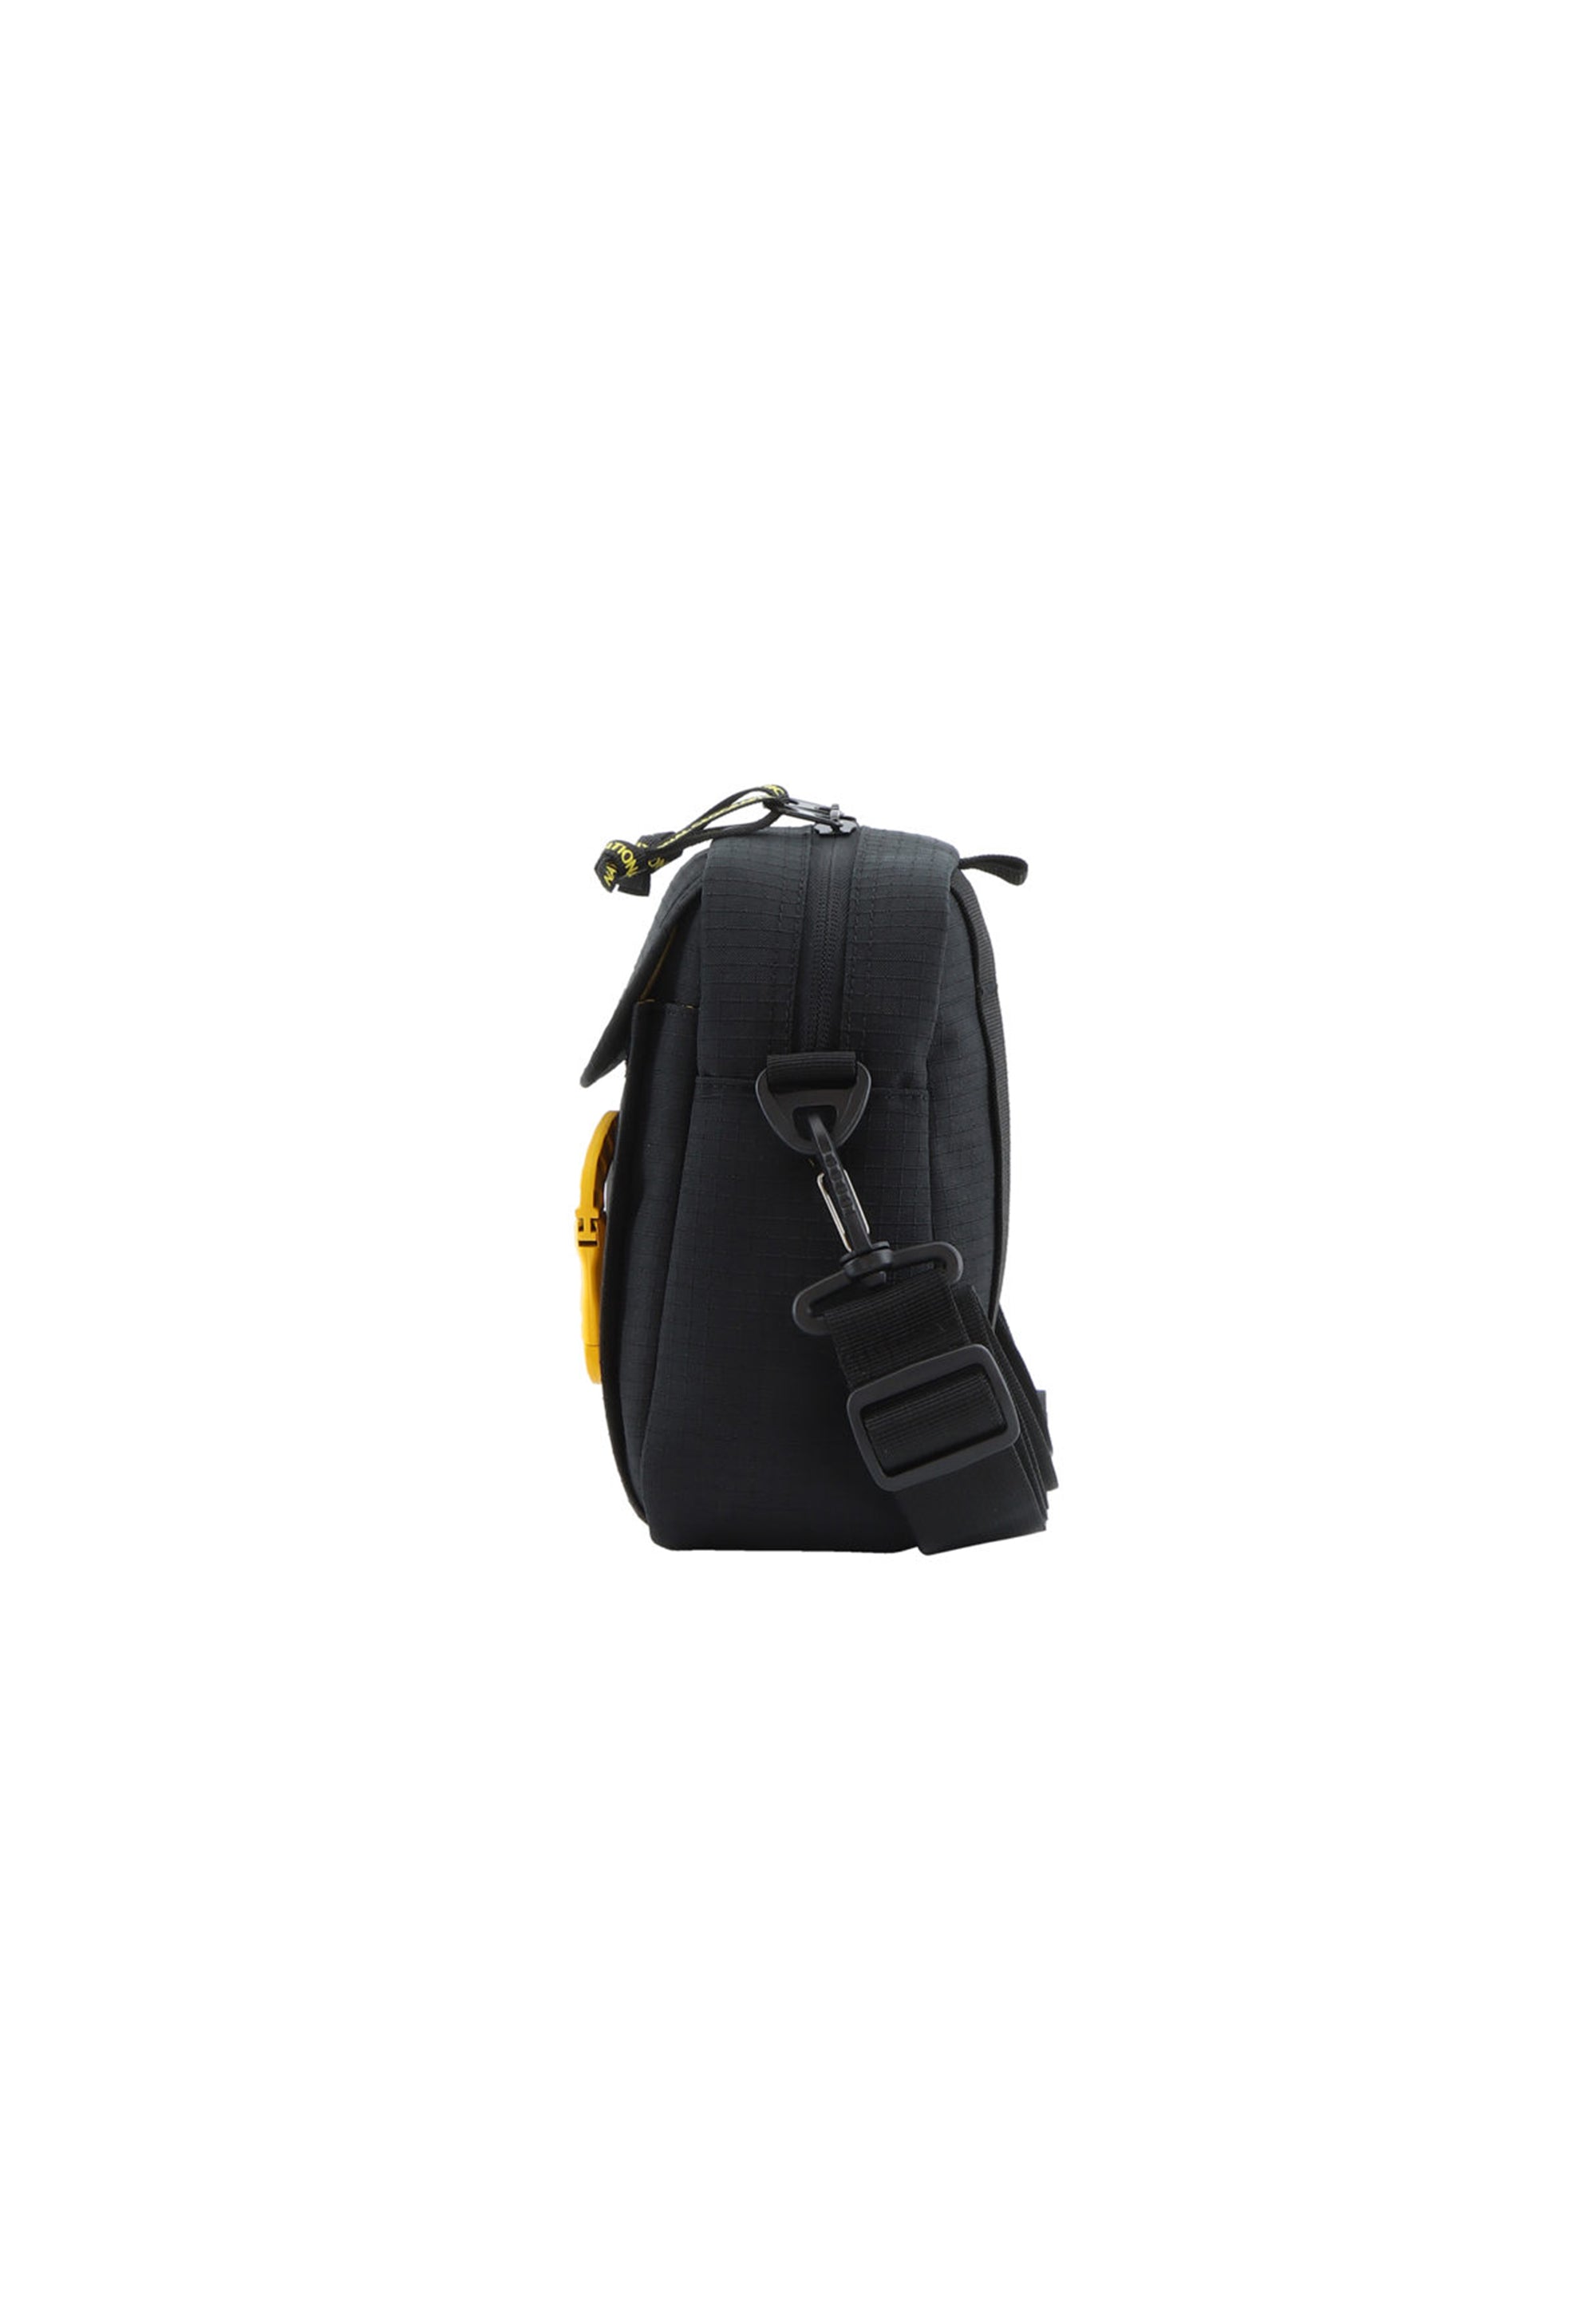 RPET Schultertasche Umhängetasche Utensilientasche aus der Nat Geo Serie Explorer 3 in schwarz